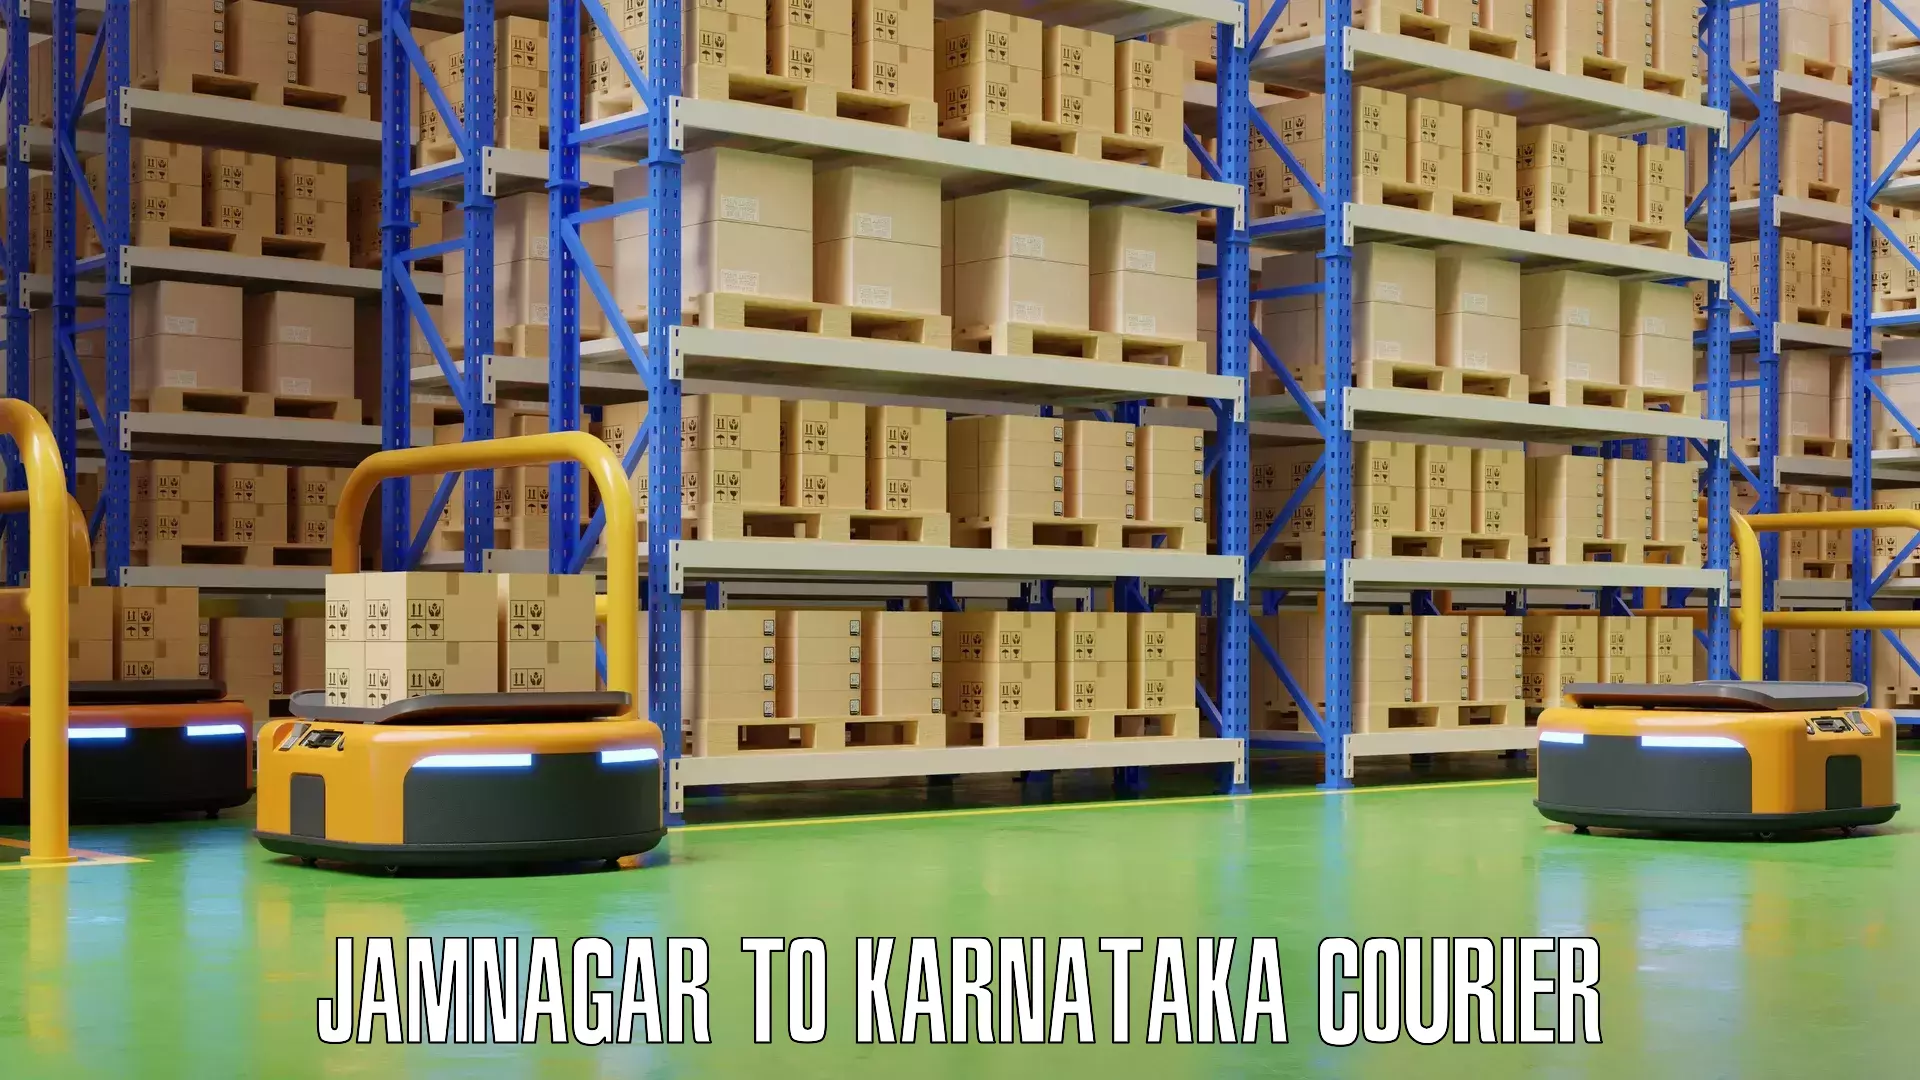 Baggage transport logistics Jamnagar to Karnataka